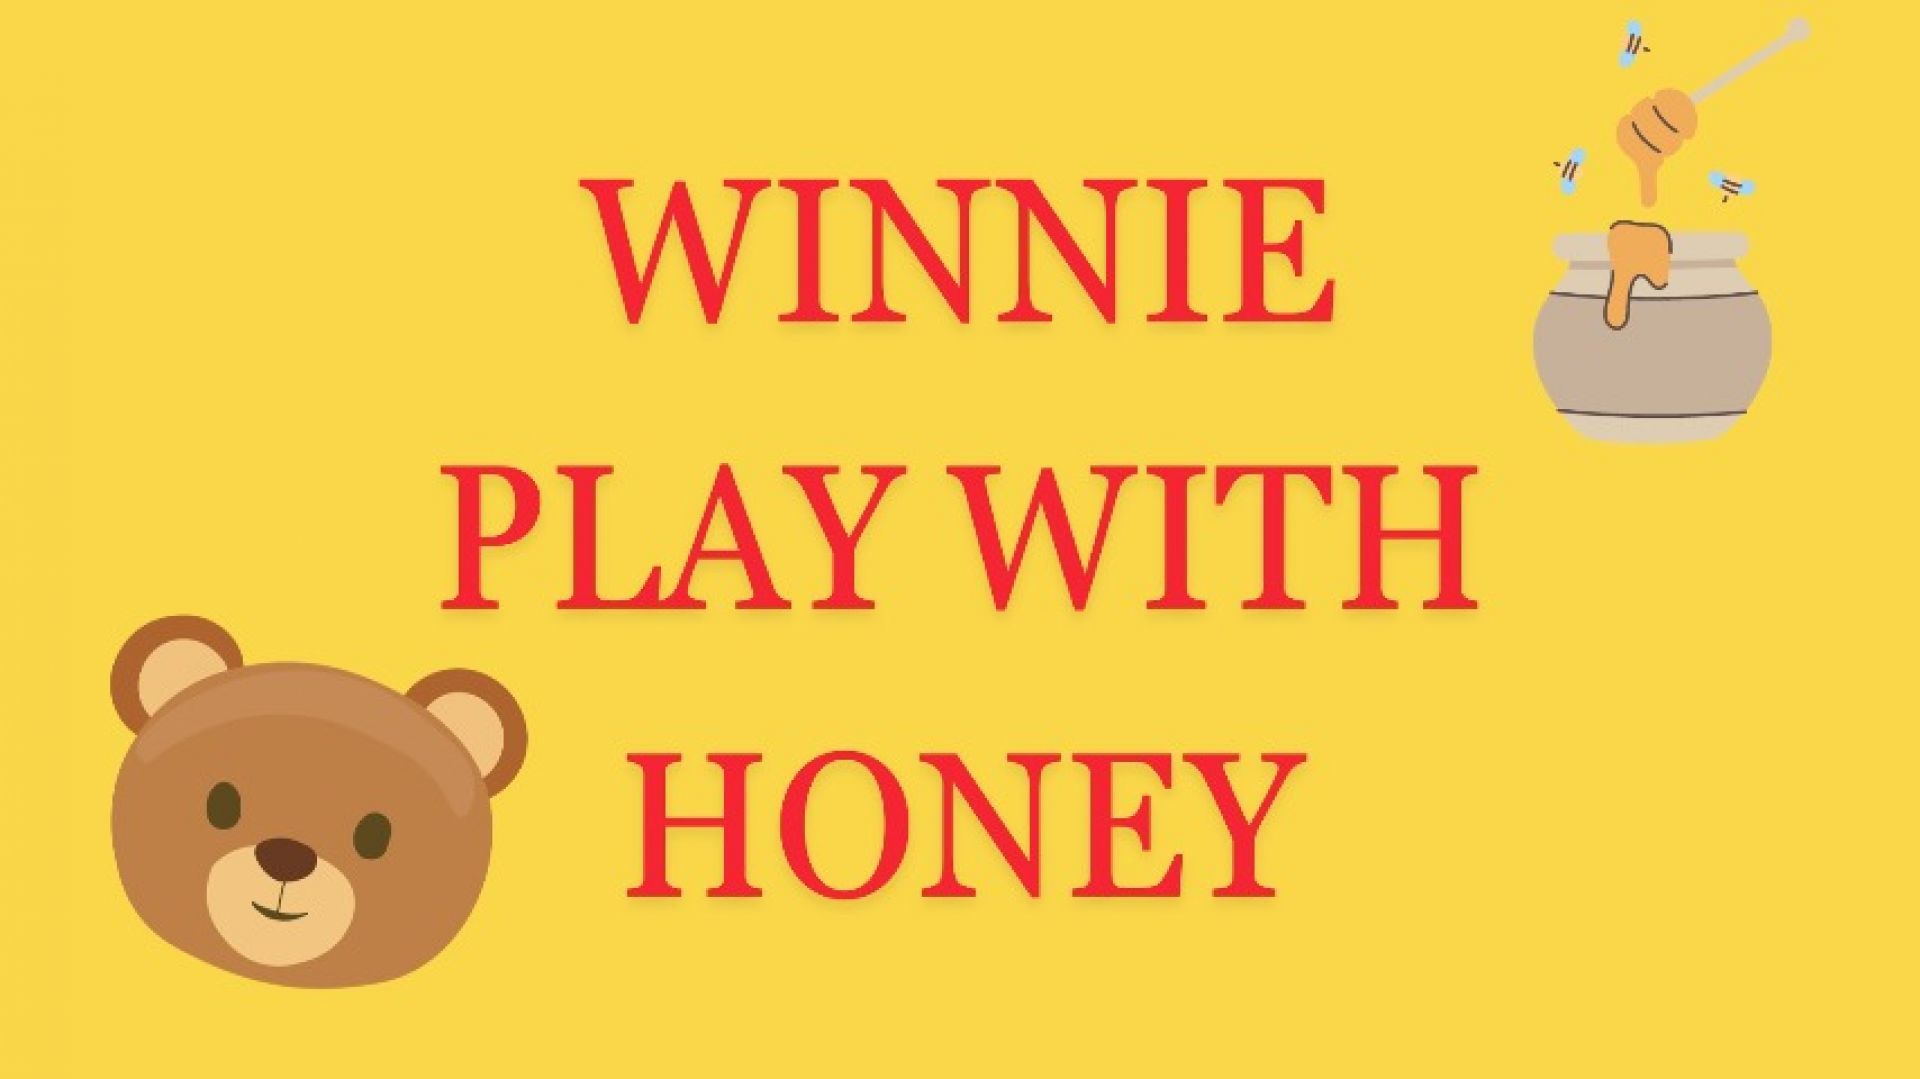 Winnie plays with honey